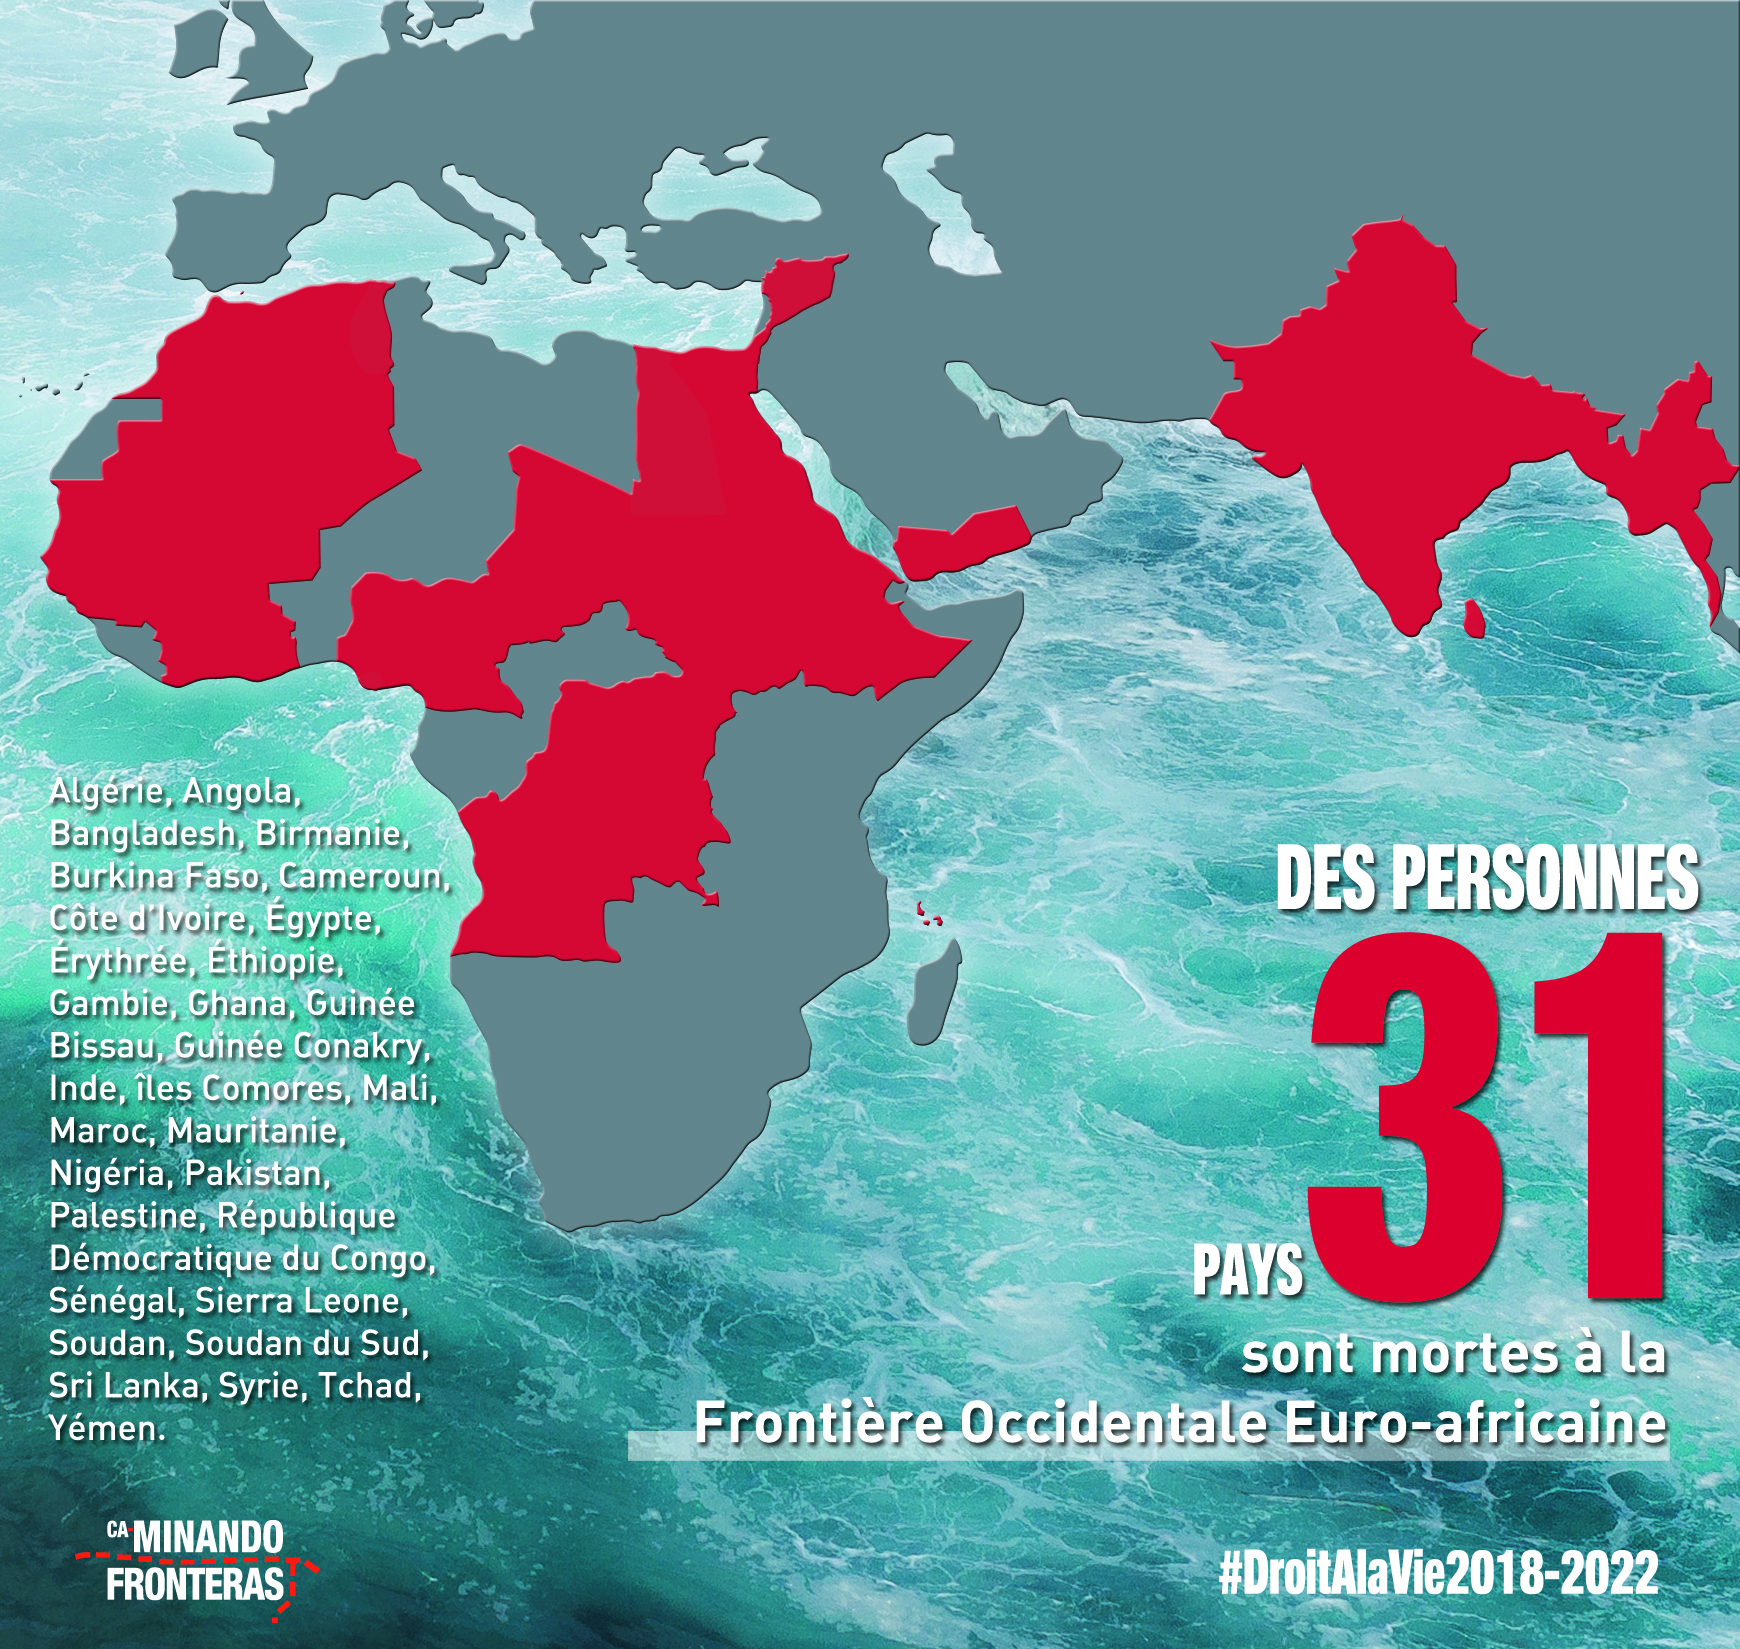 Les victimes de la Frontière Occidentale Euro-Africaine entre 2018-2022 provenaient de 31 pays différents.